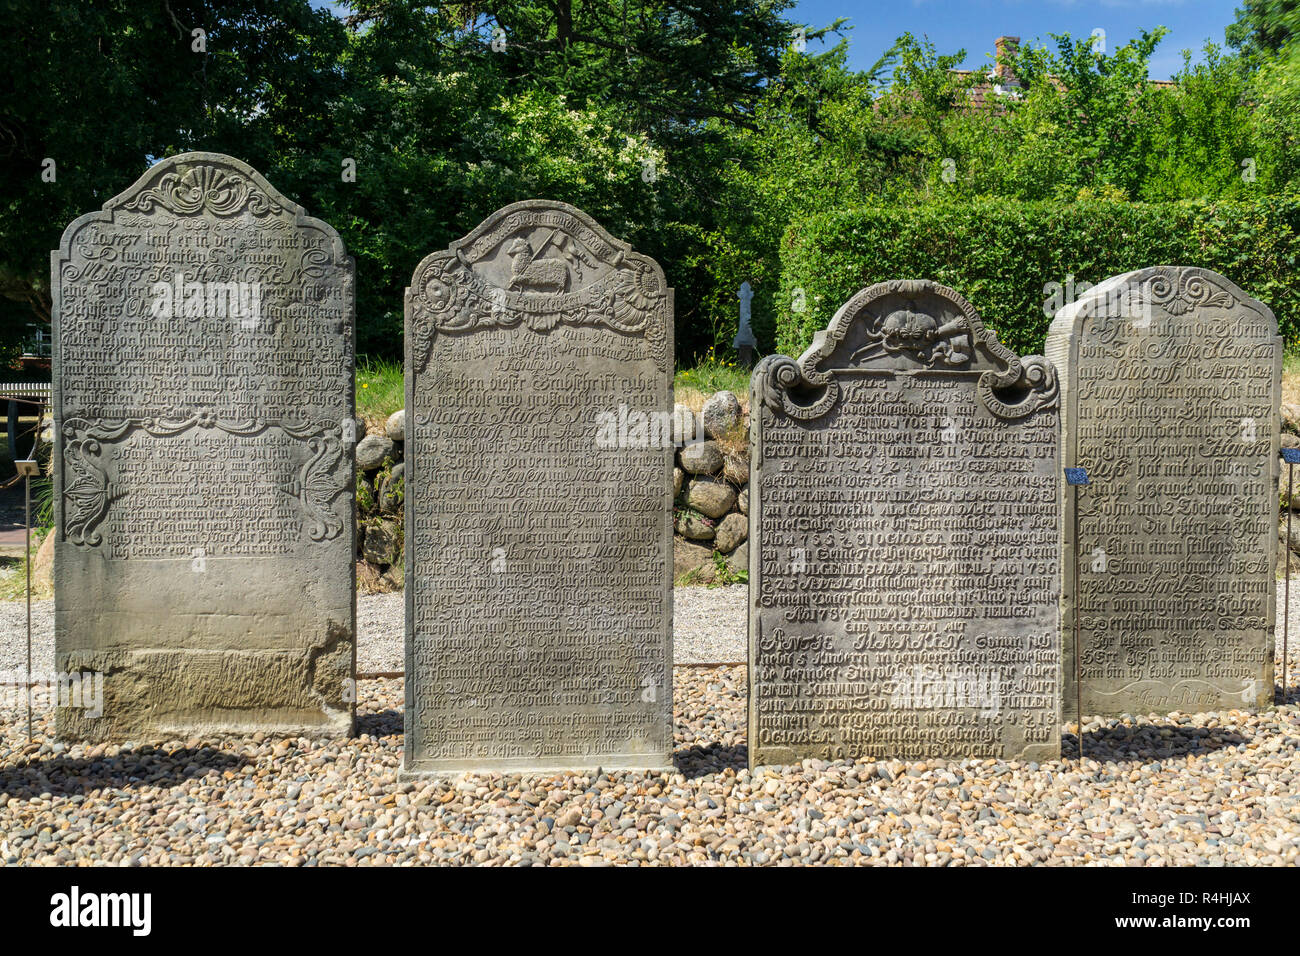 Nordfriesland, Speaking gravestones on the cemetery in fog on Amrum, Sprechende Grabsteine auf dem Friedhof in Nebel auf Amrum Stock Photo